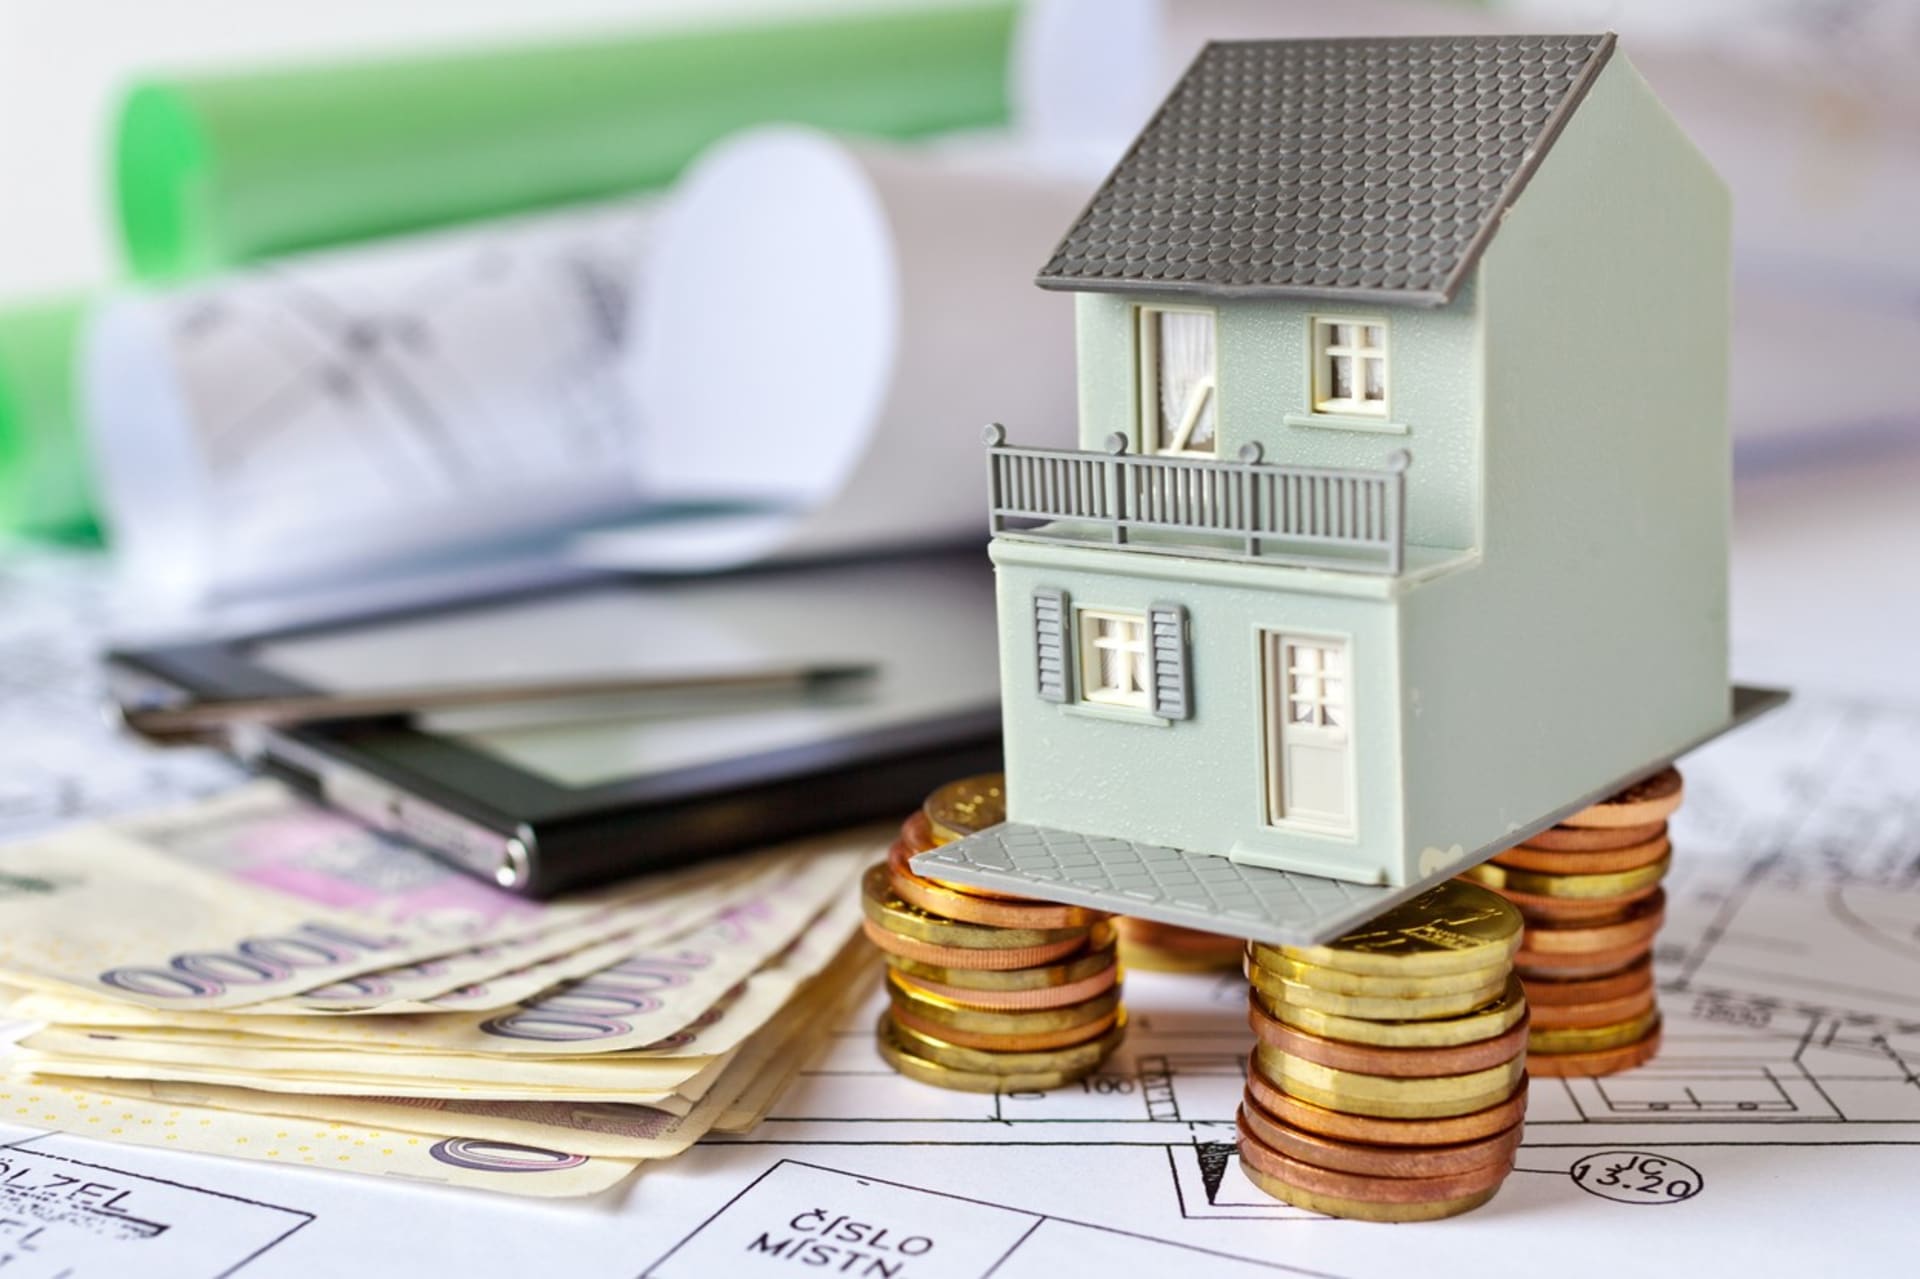 V případě, že si chce někdo pořídit dům nebo byt na hypotéku, potřebuje k tomu výrazně více našetřených financí než dříve. (Ilustrační foto)